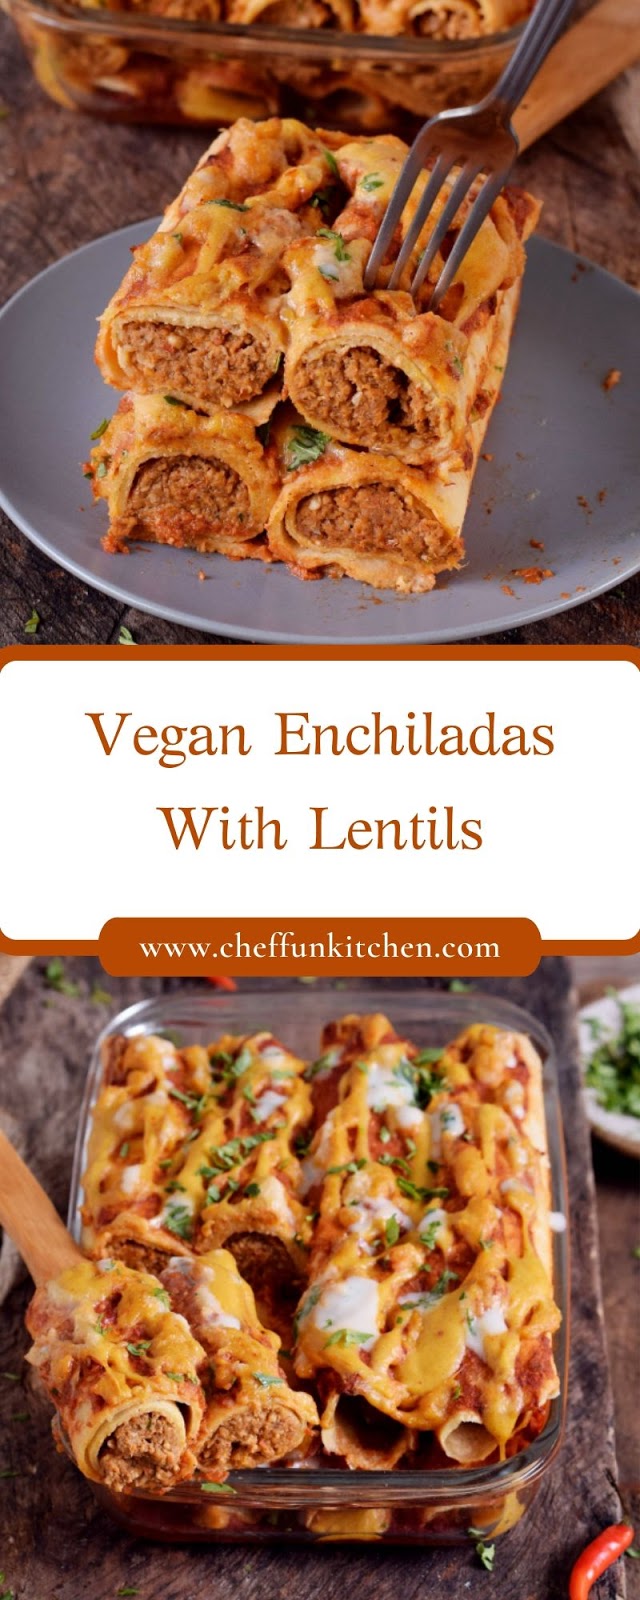 Vegan Enchiladas With Lentils